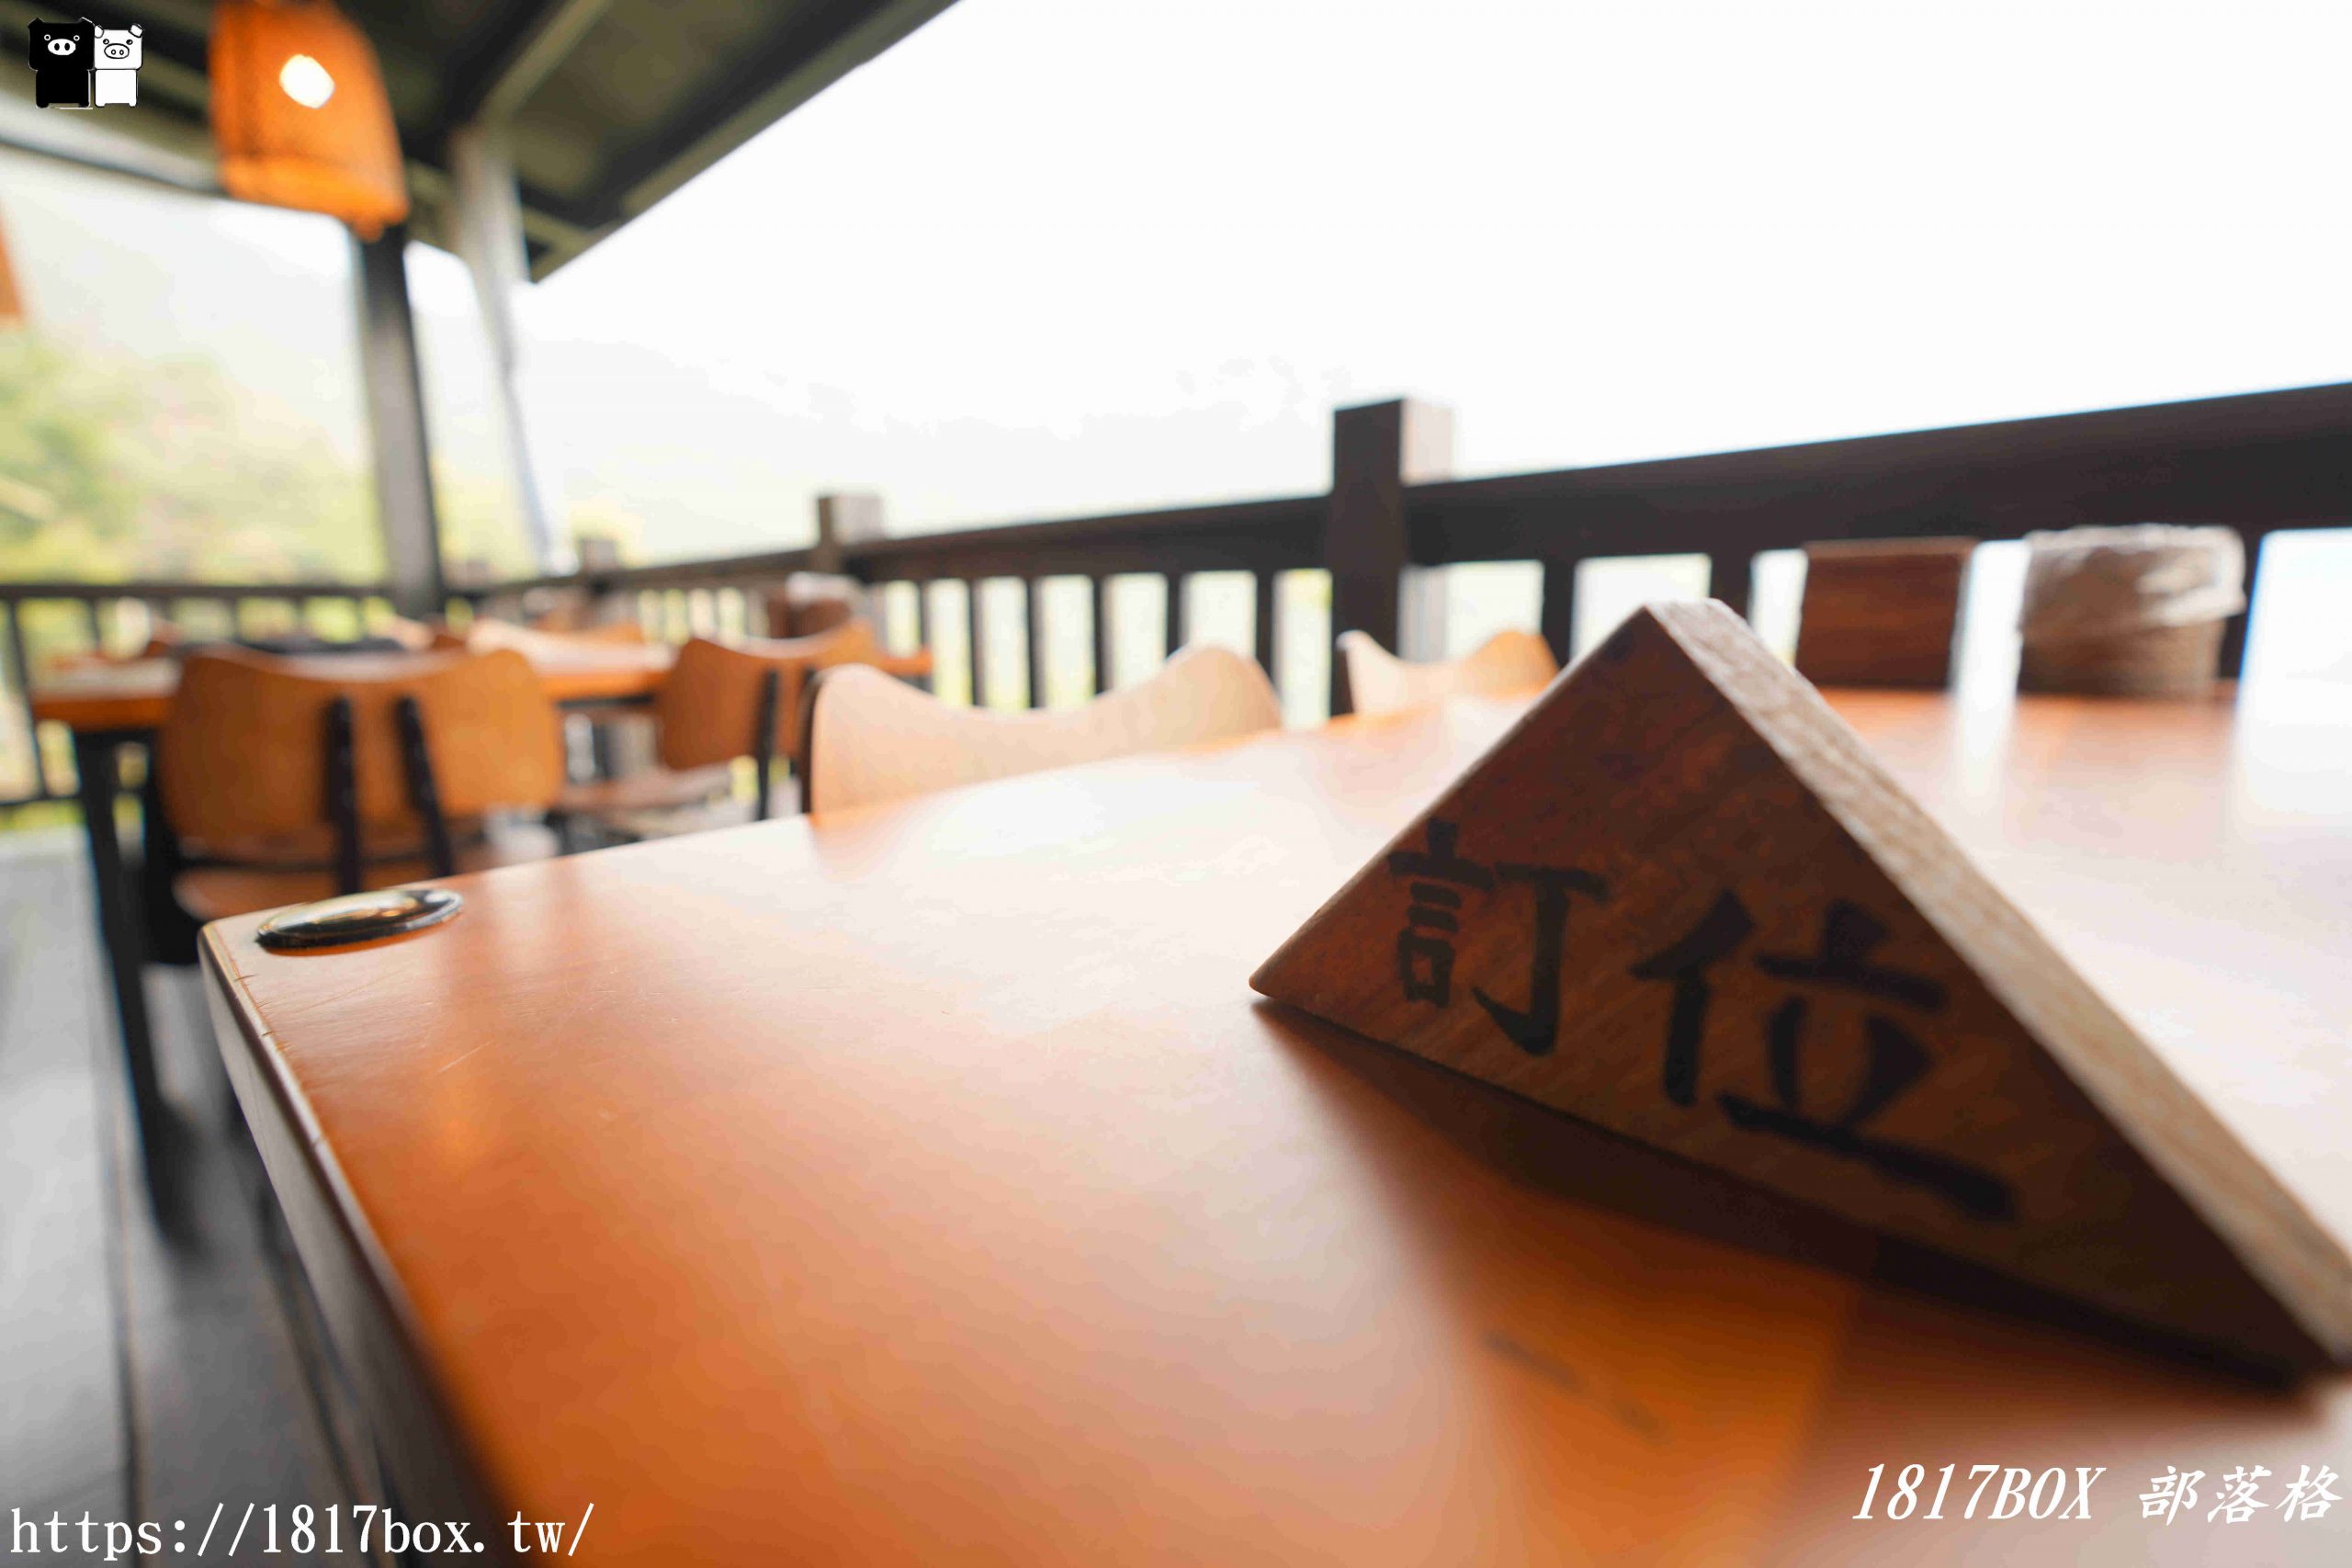 【嘉義。阿里山】游芭絲鄒宴餐廳-YUPASU Tsou Restaurant。採擷自然原始的食材。利用柴燻、涼拌、溫煨保留原味。鄒族風味餐